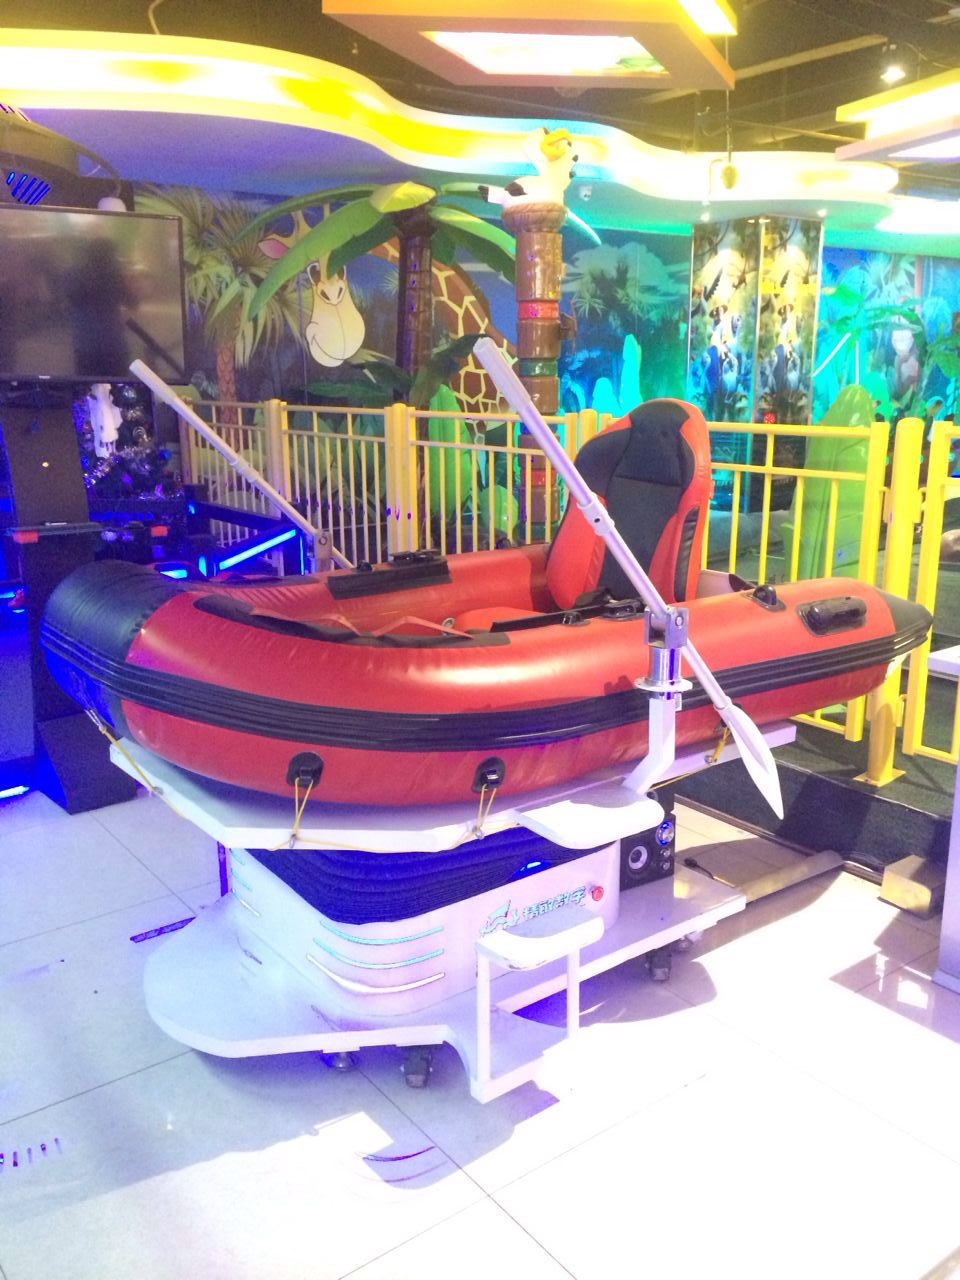 银河幻影VR互动产品虚拟漂流船水上冲浪模拟体验VR文旅项目设备